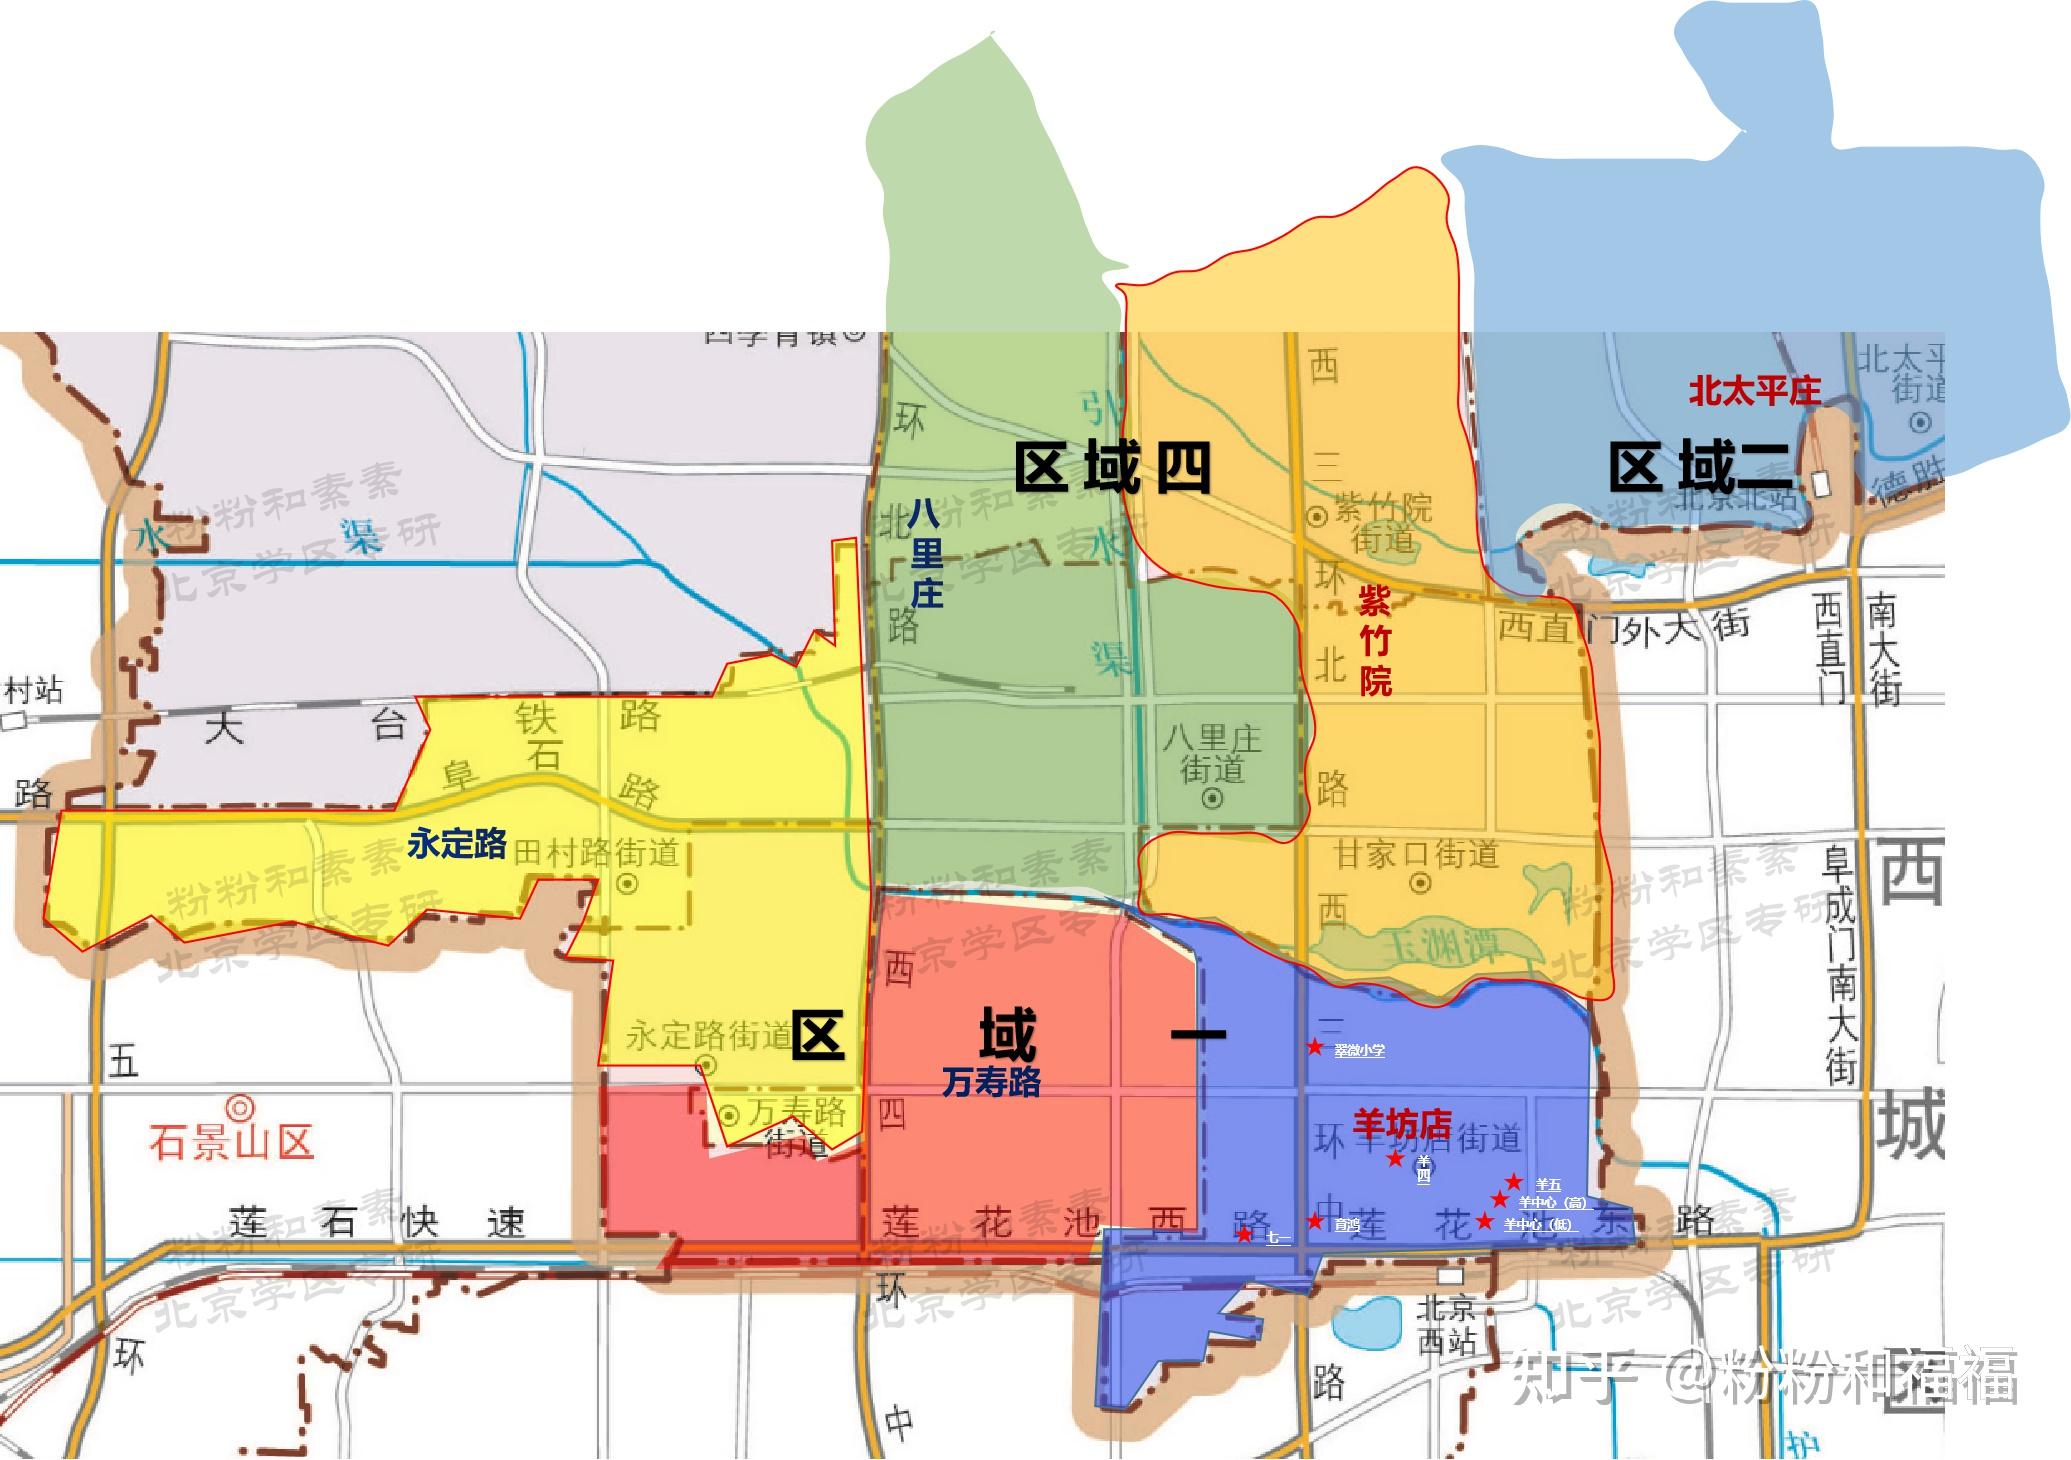 北京海淀学区划分,街道地图 学区划分 